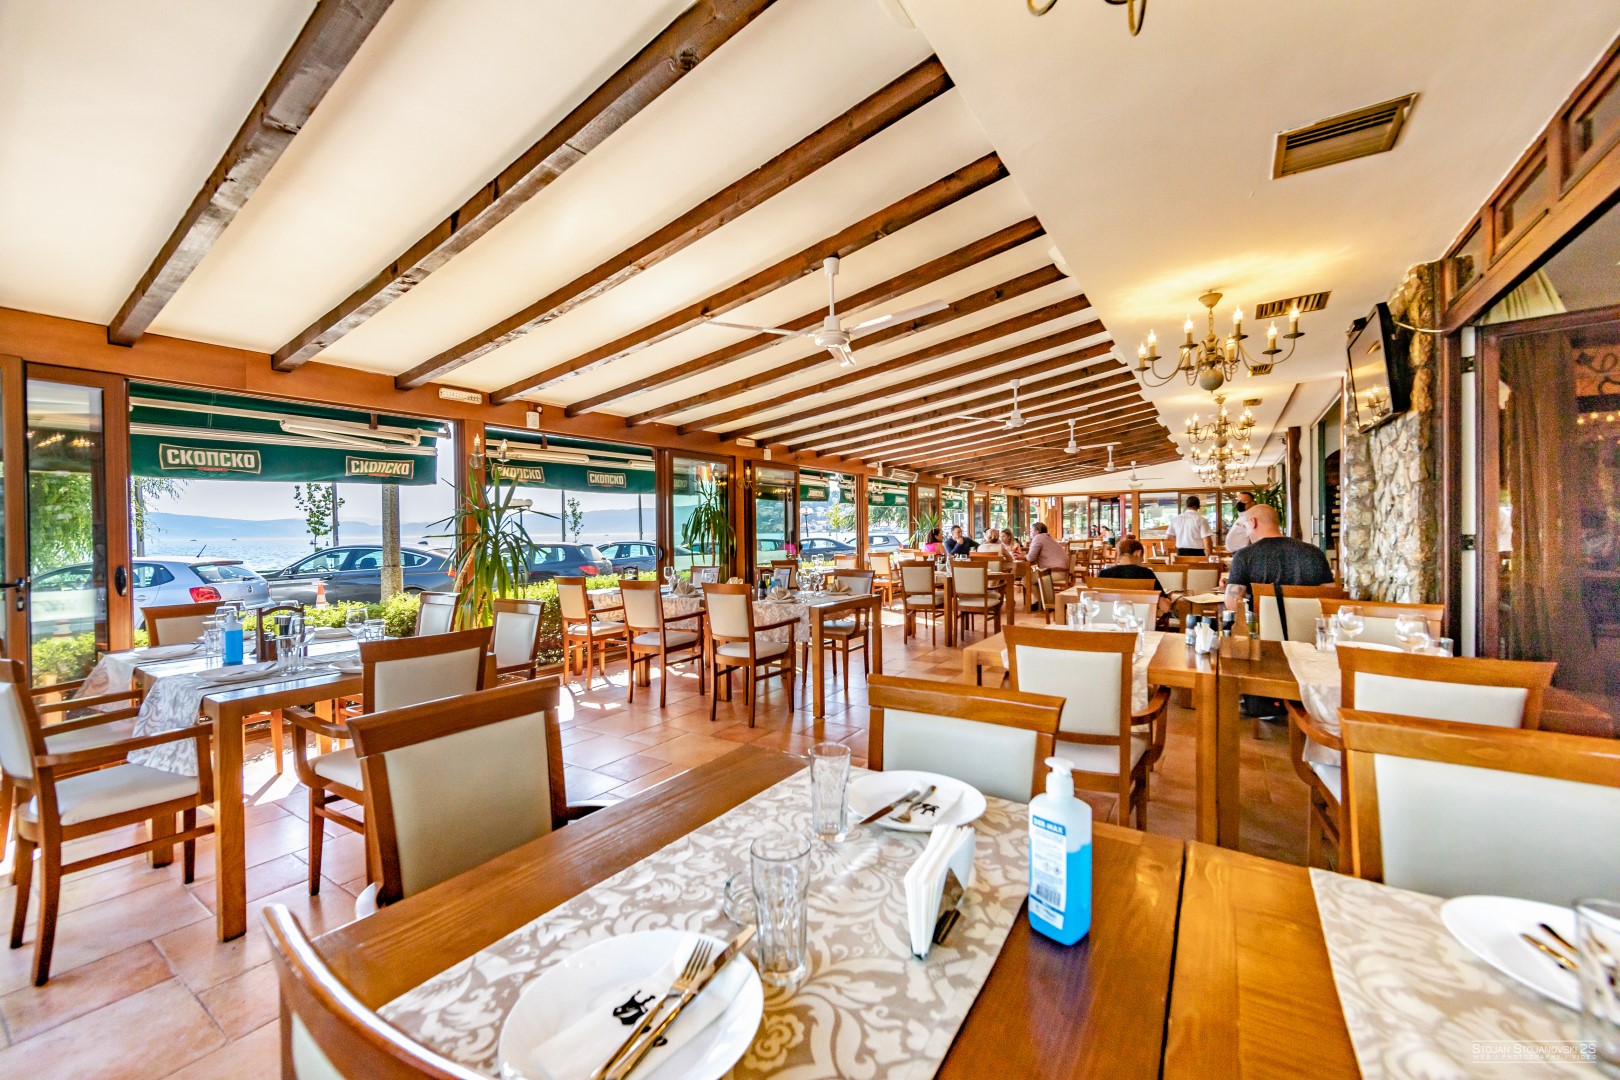 Putovanje Ohrid, evropski gradovi, hotel Tino, izgled restorana